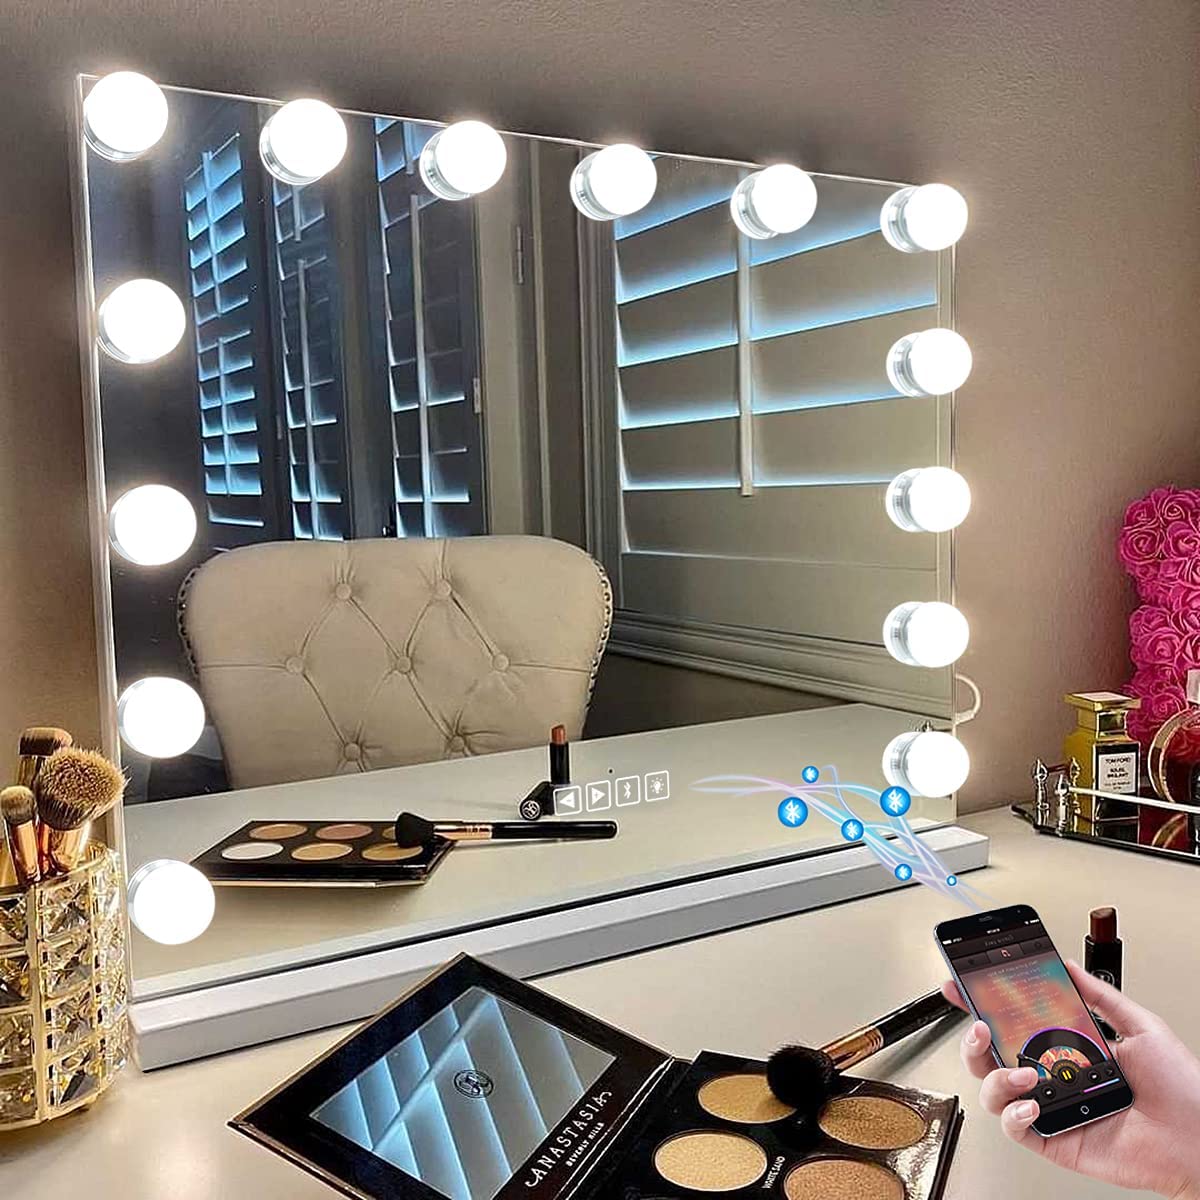 Lampu LED yang Dapat Diredupkan Hollywood Lighted Makeup Mirror